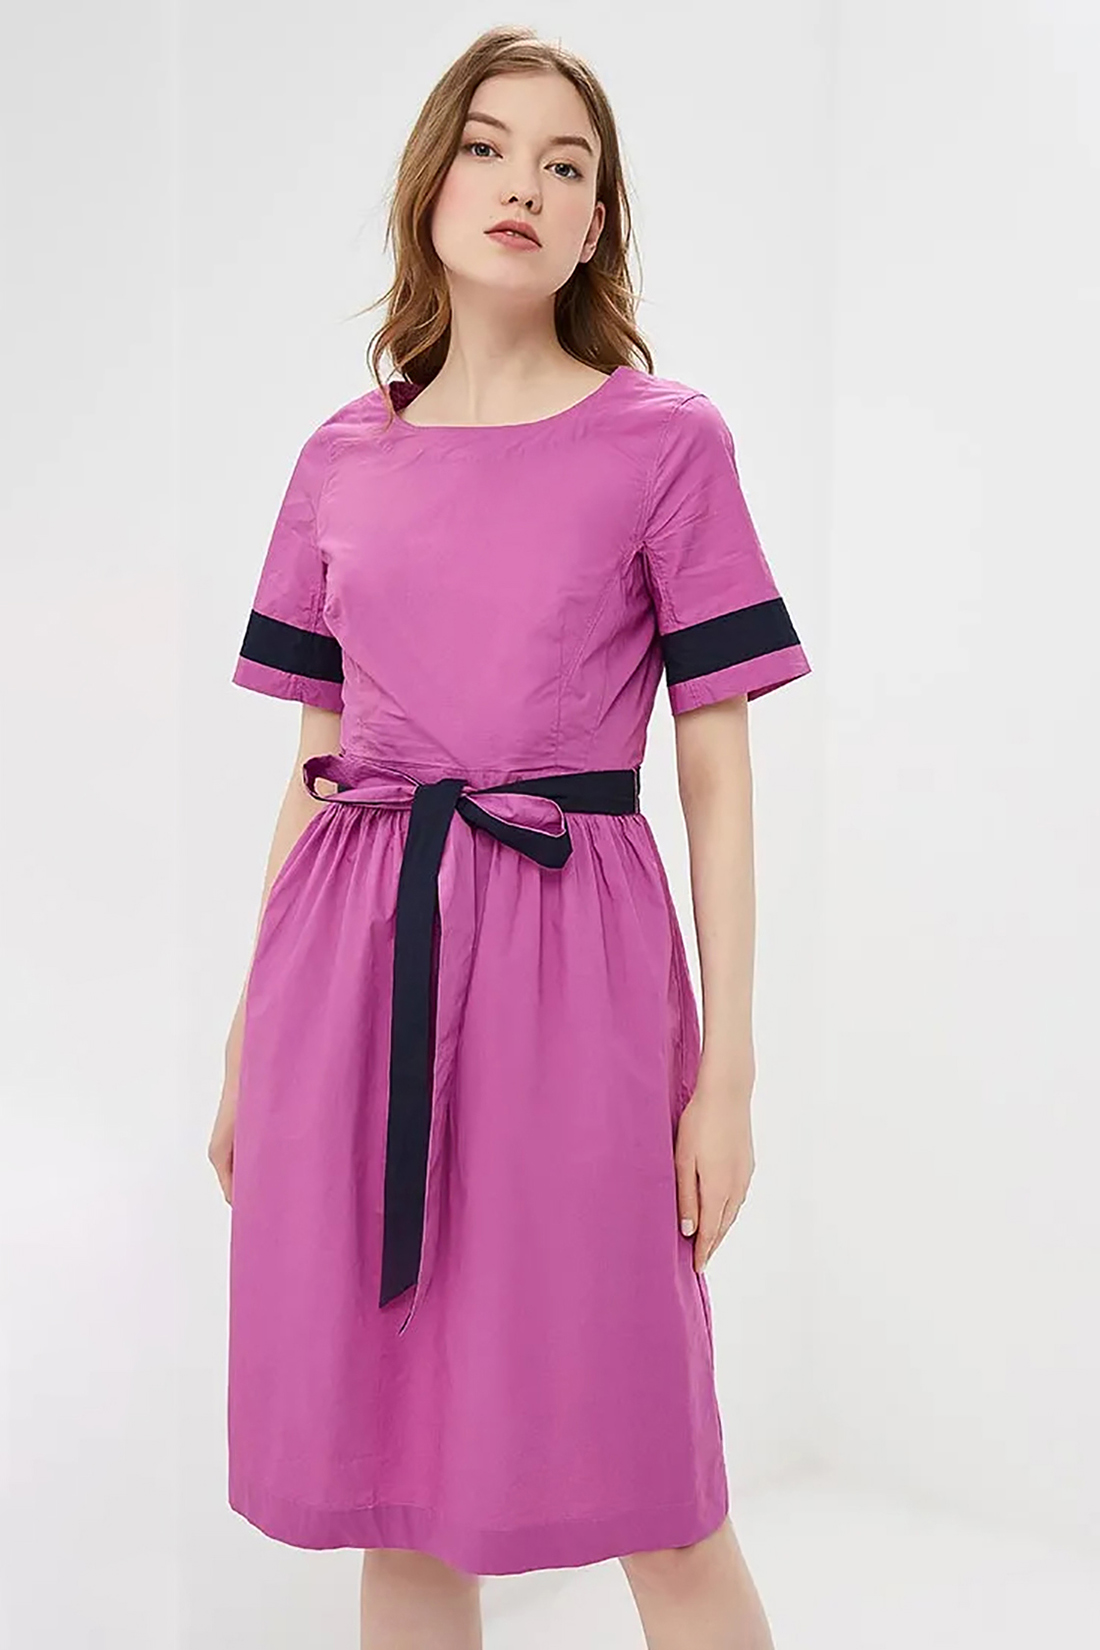 Платье с контрастной отделкой (арт. baon B459062), размер L, цвет розовый Платье с контрастной отделкой (арт. baon B459062) - фото 3